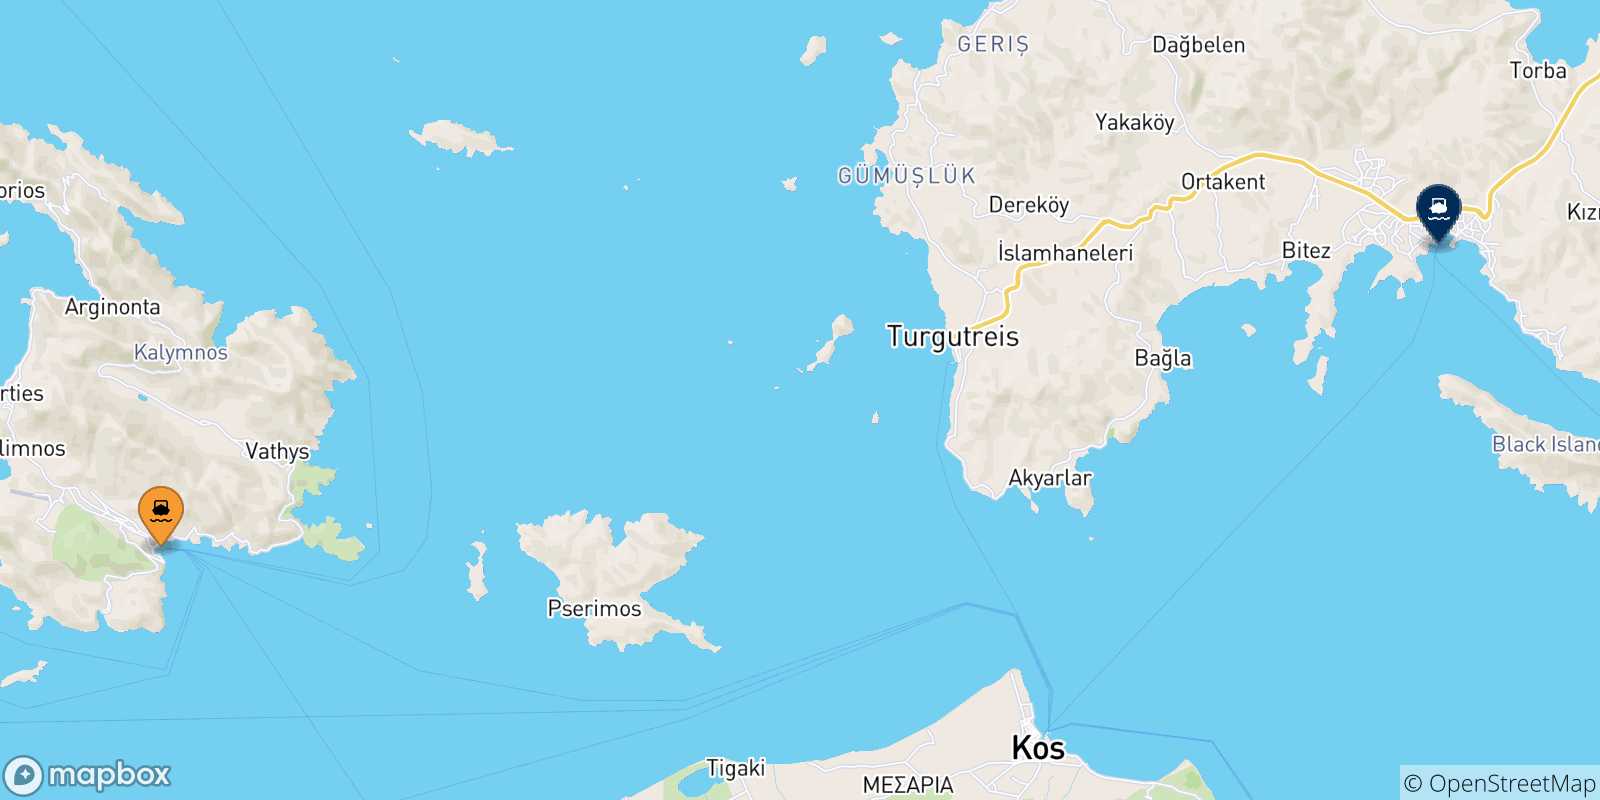 Mappa delle possibili rotte tra Kalymnos e la Turchia